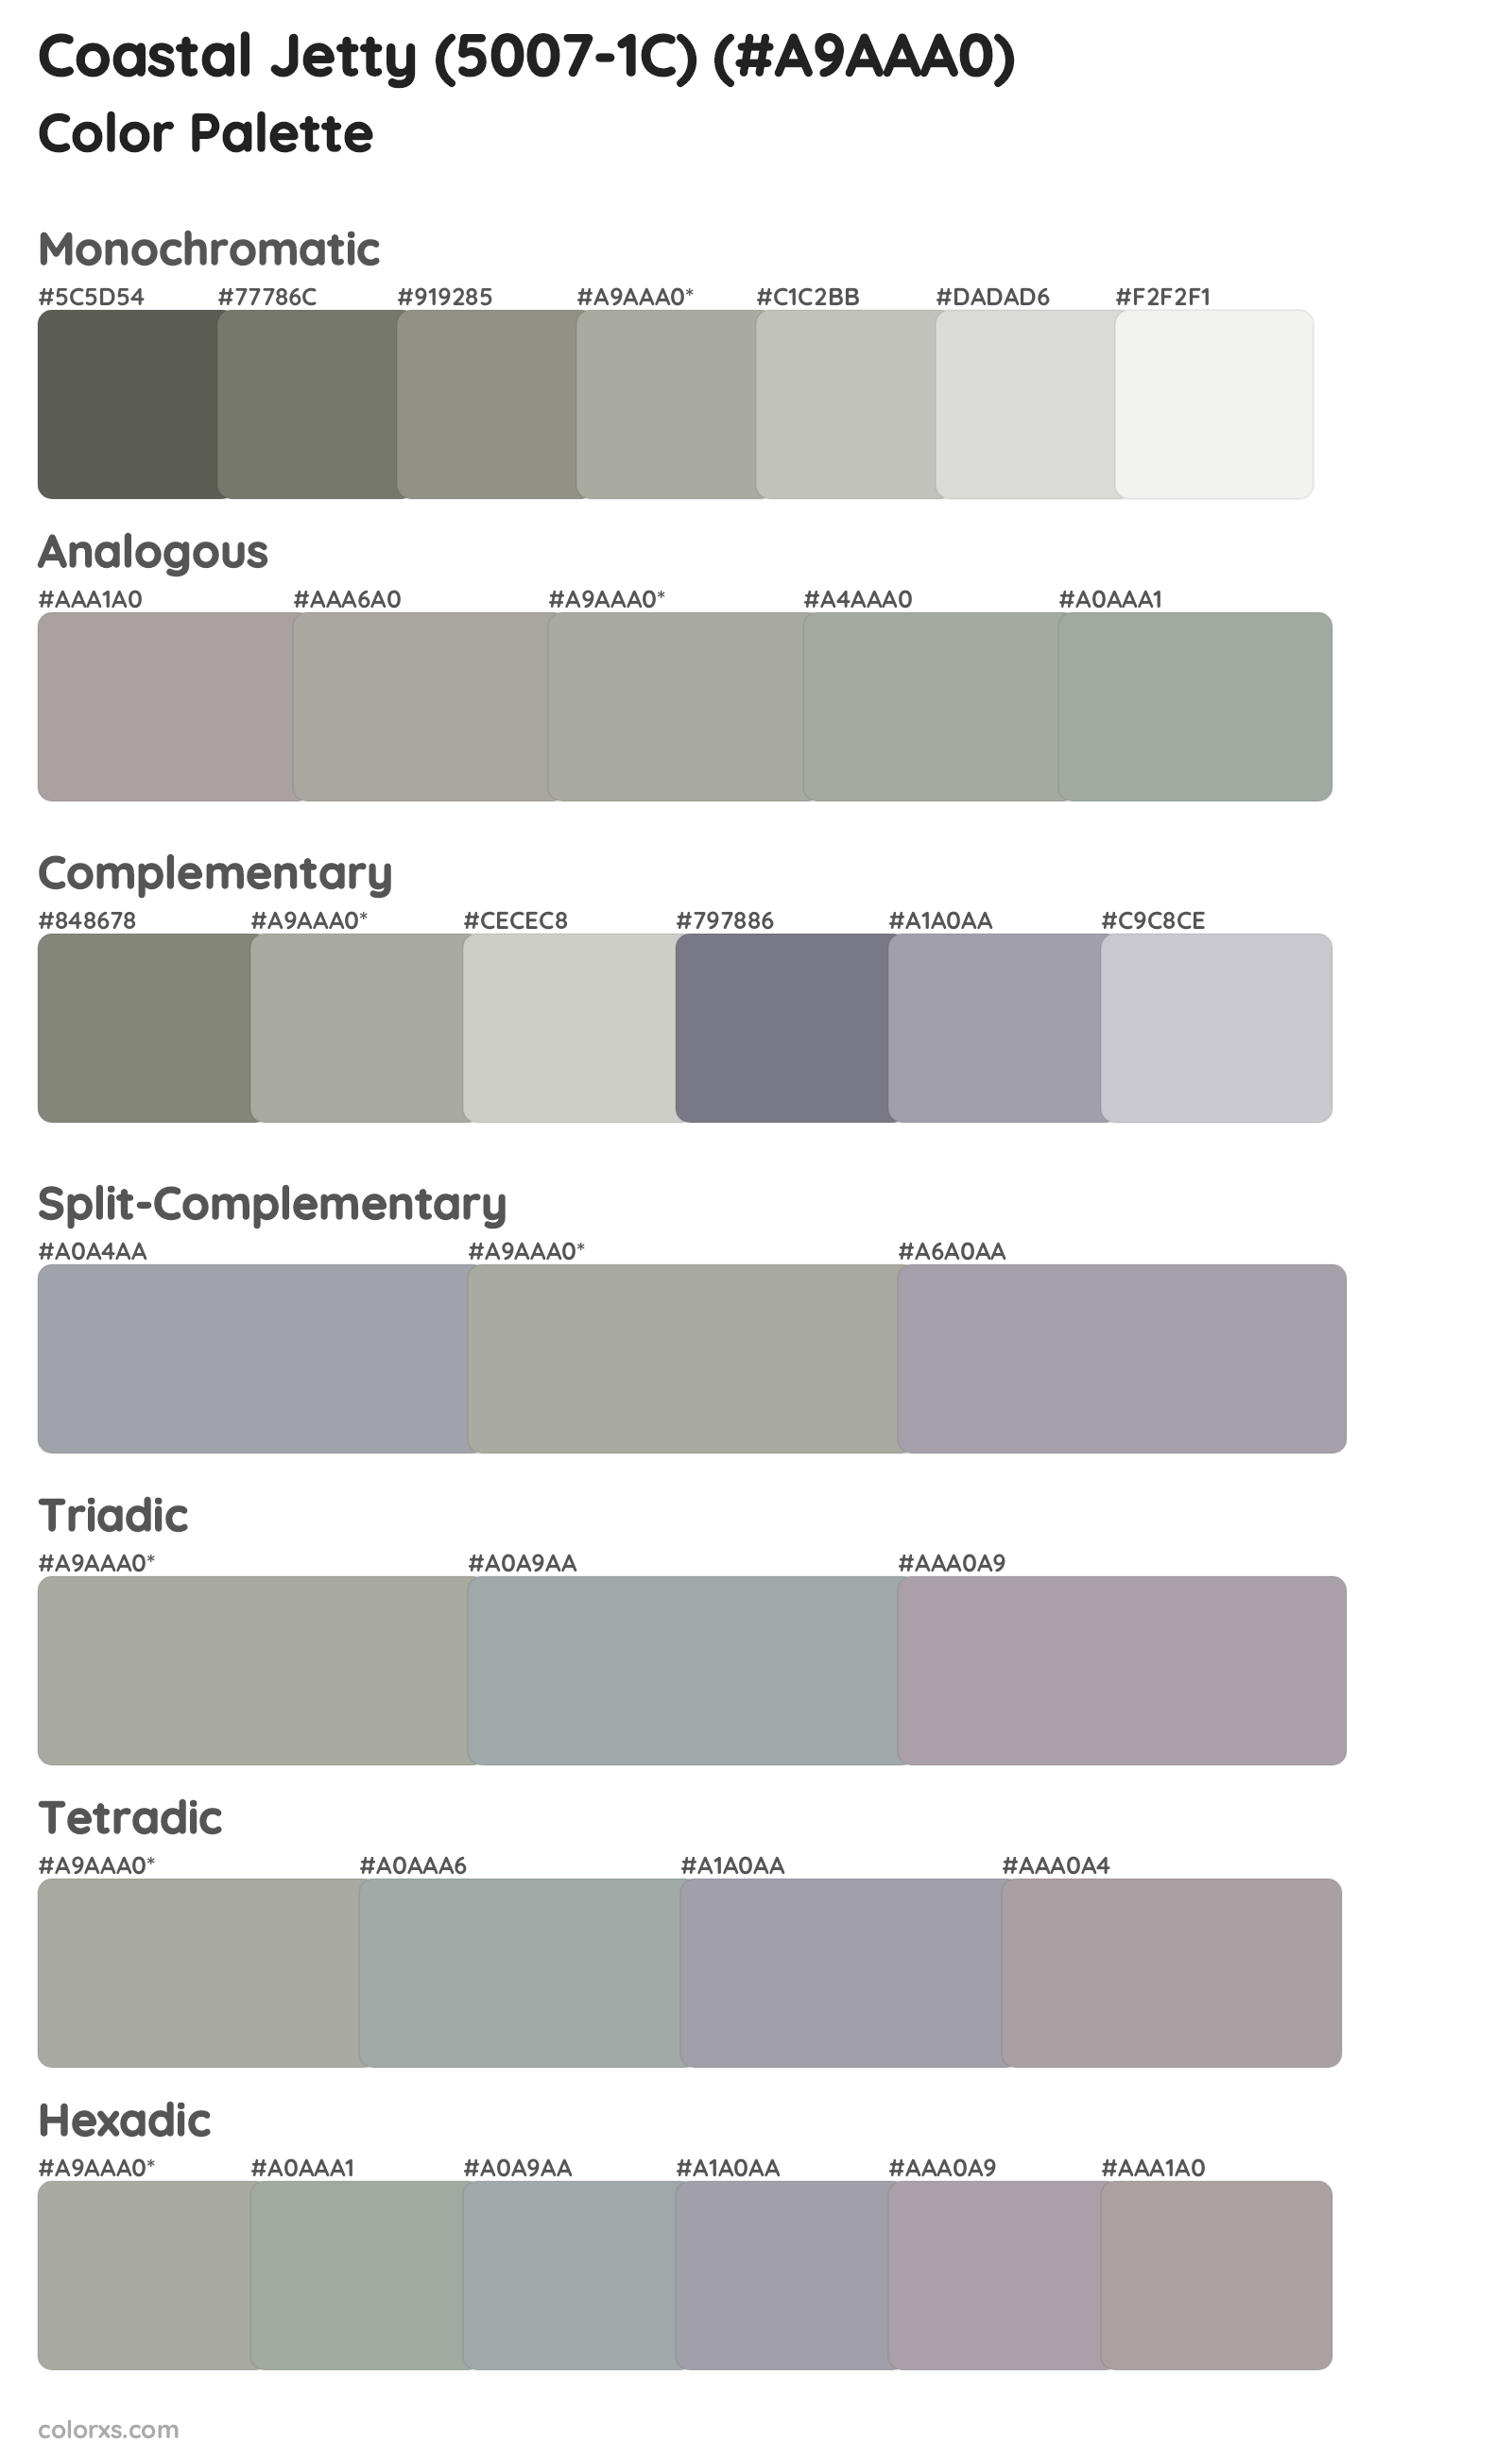 Coastal Jetty (5007-1C) Color Scheme Palettes